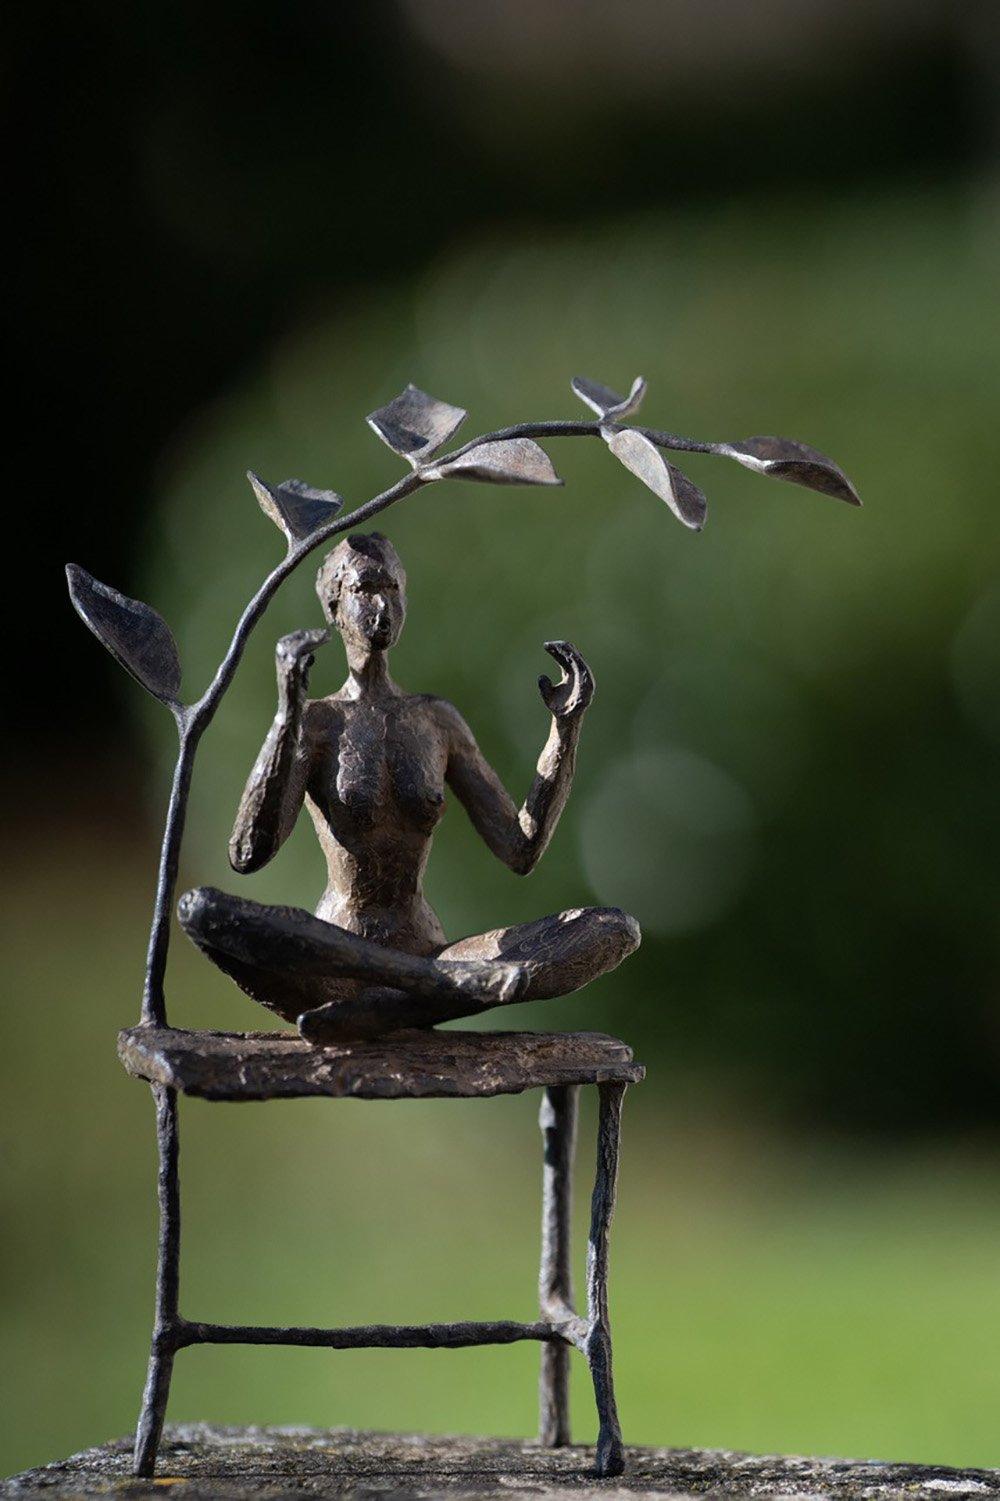 Le jardin de méditation est une sculpture en bronze de l'artiste contemporaine française Marine de Soos, dont les dimensions sont de 26 × 13 × 7 cm (10,2 × 5,1 × 2,8 in). 
La sculpture est signée et numérotée, elle fait partie d'une édition limitée